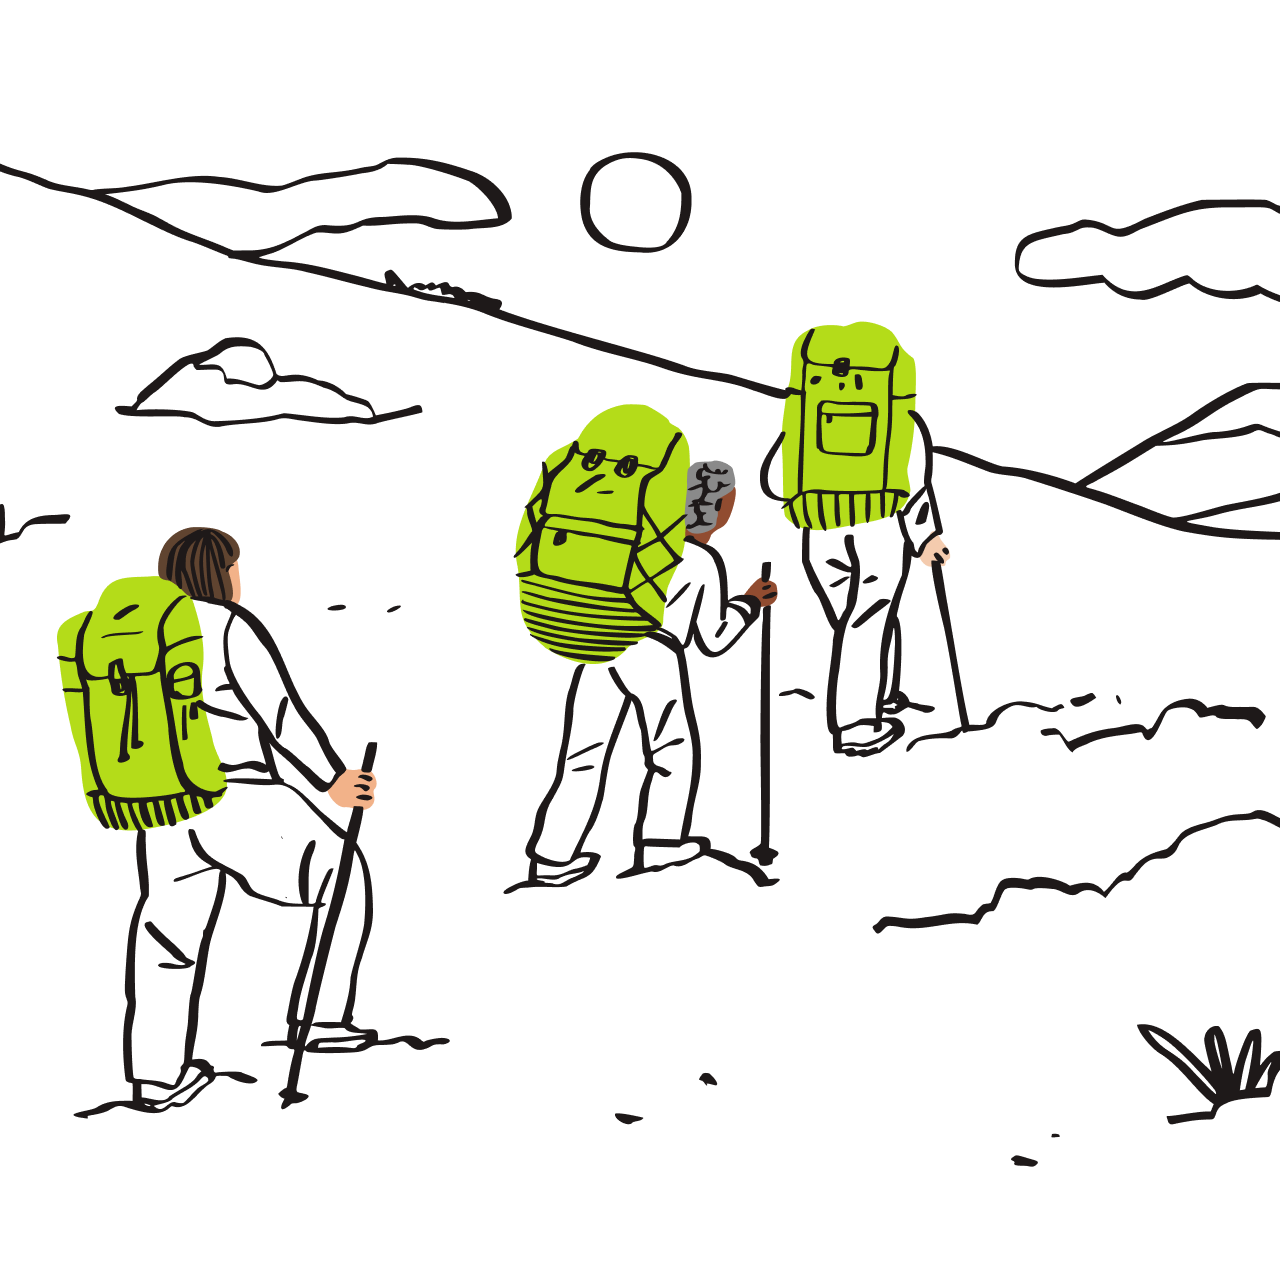 ハイキング中の 3 人のバックパッカーのイラスト